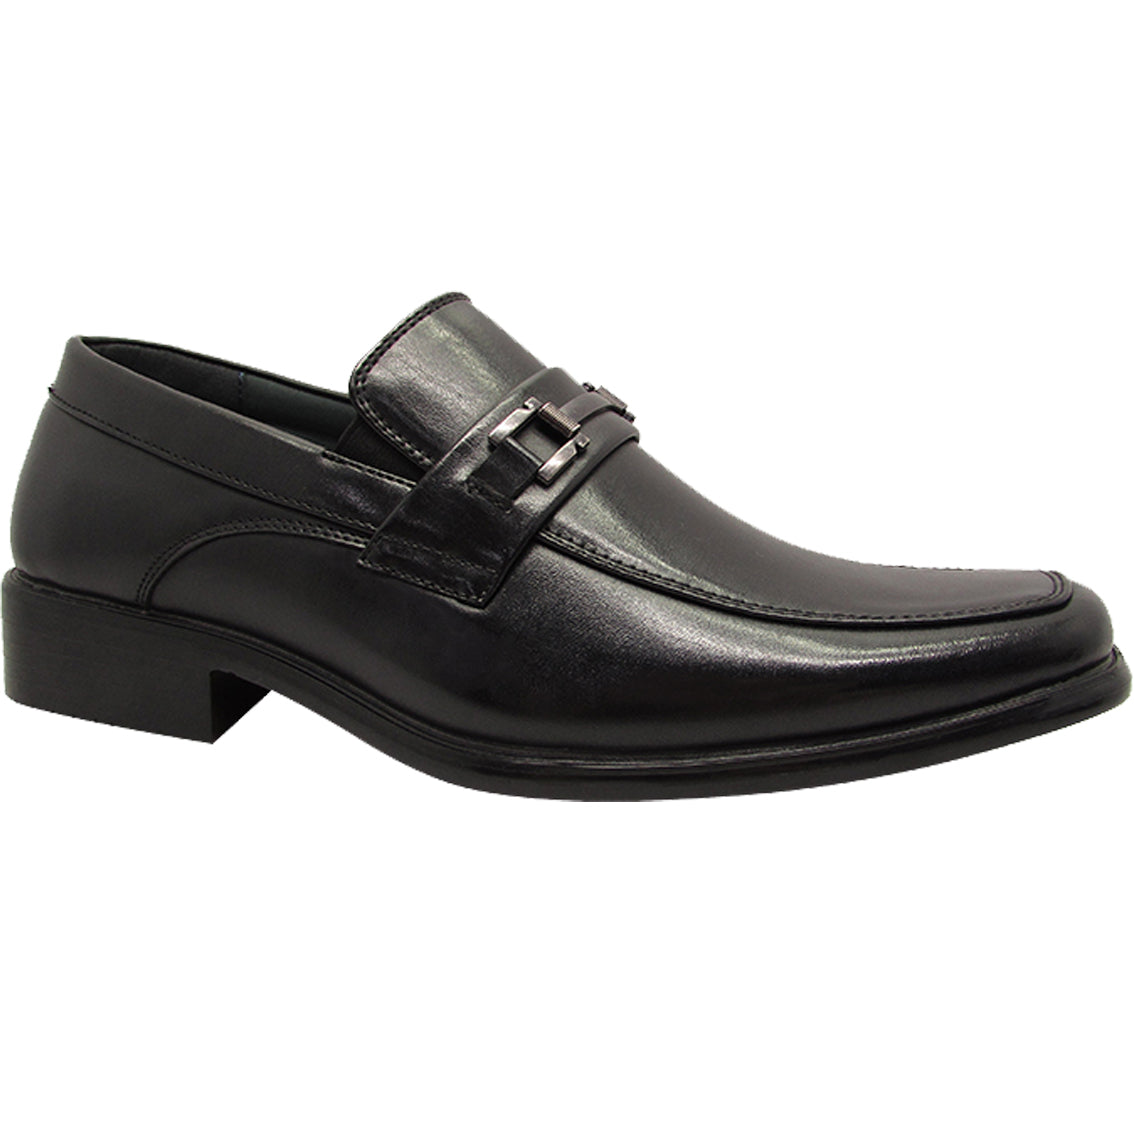 Wholesale Men's Shoes For Men DRESS Loafer Bruce NFKN